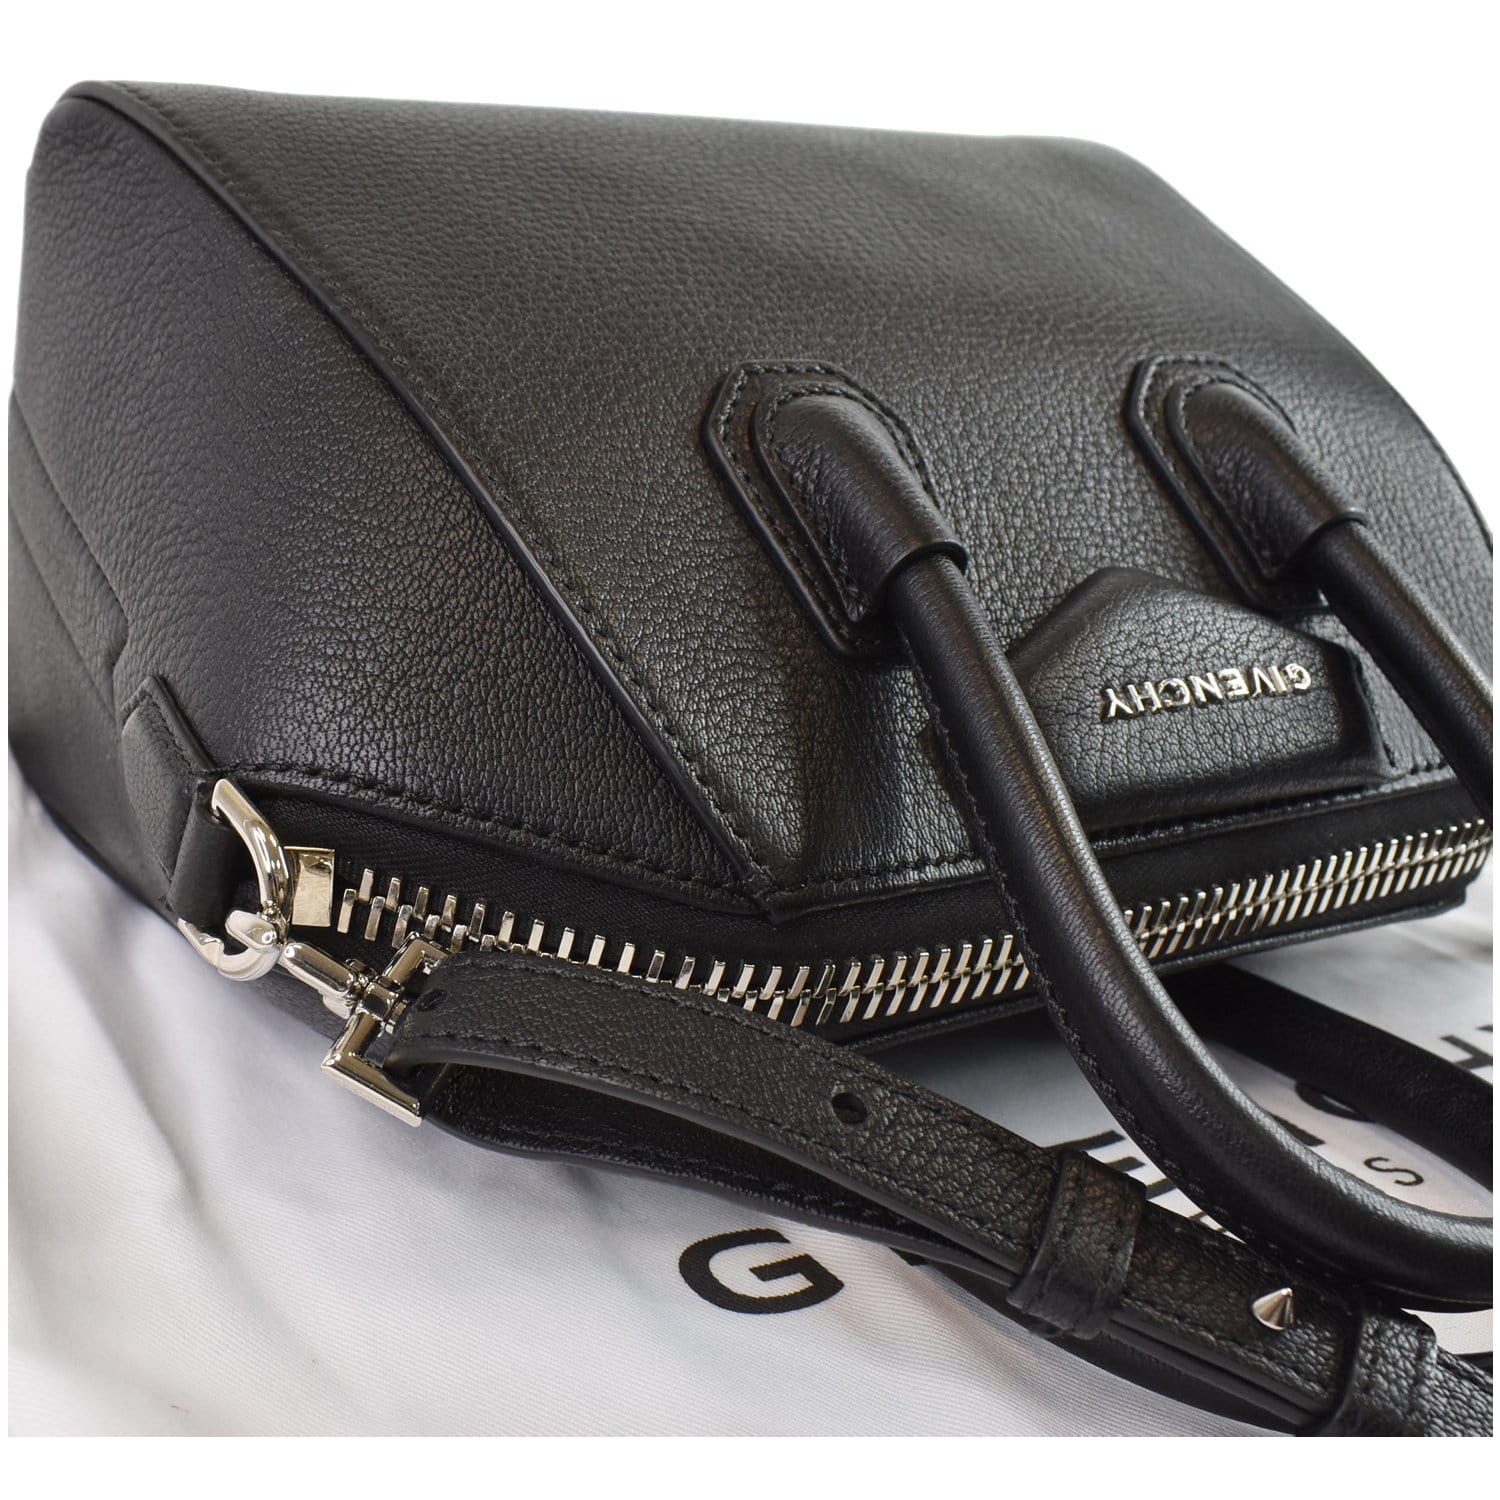 Givenchy Antigona Leather Mini Handle Bag